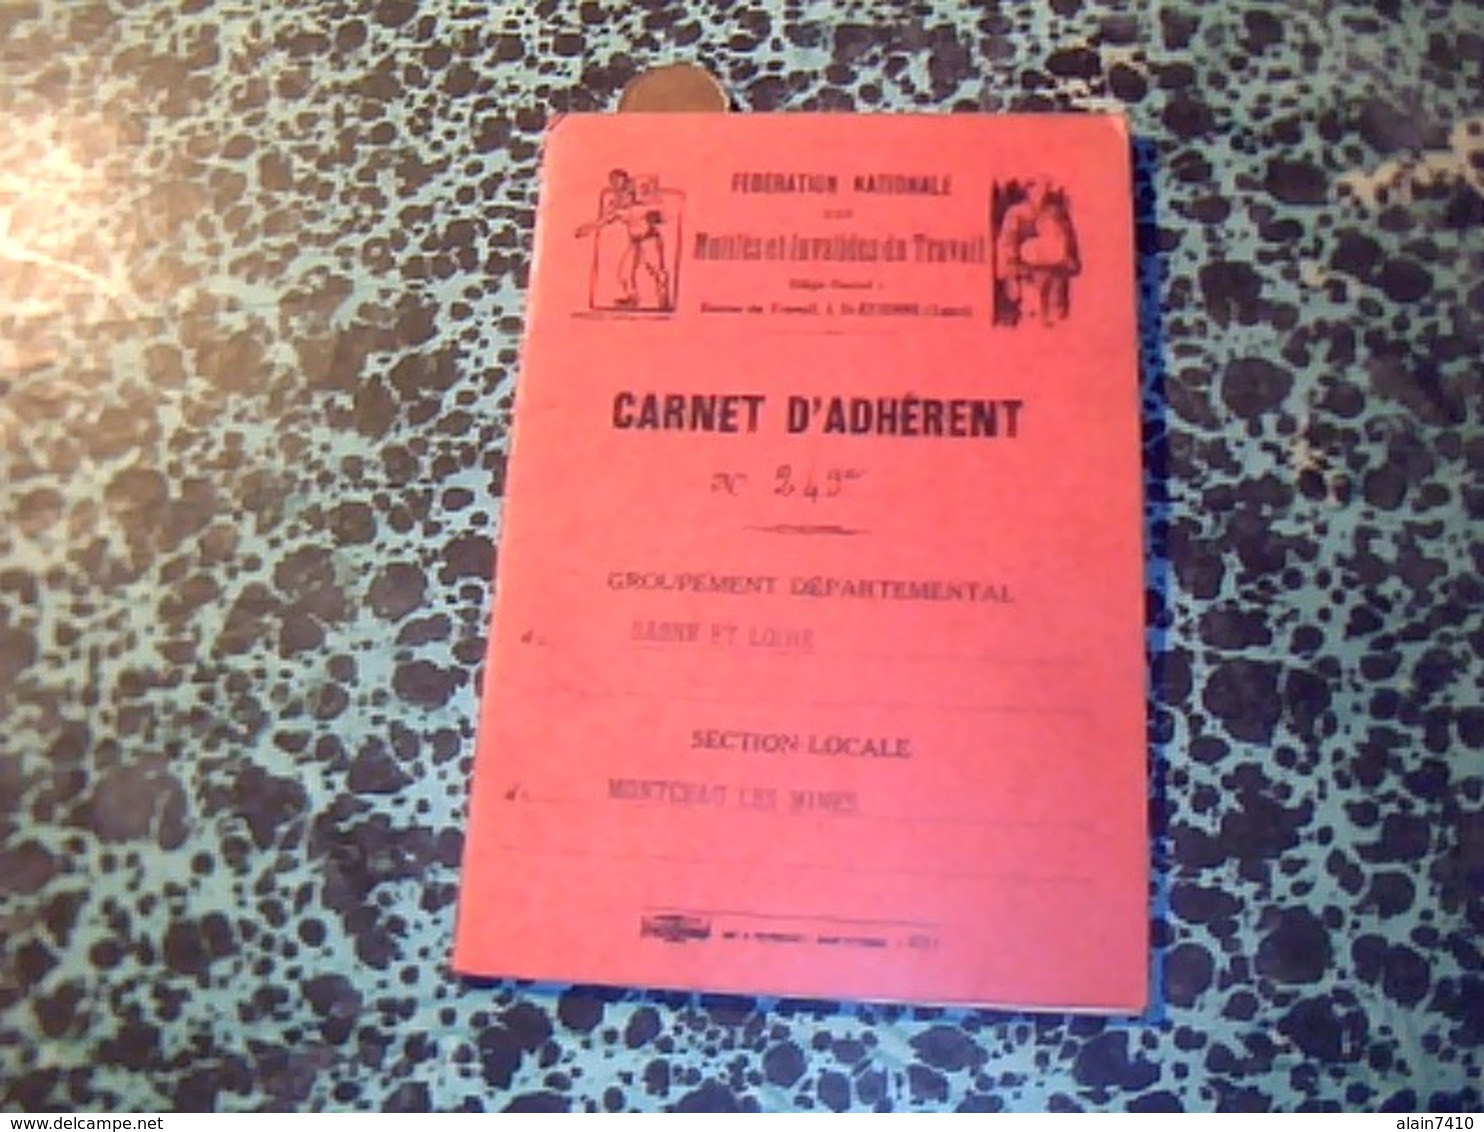 Carnet D Adherent Federation Nationale Mutiles Et Invalides Du Travail Montceau Les Mines 1941? - Membership Cards